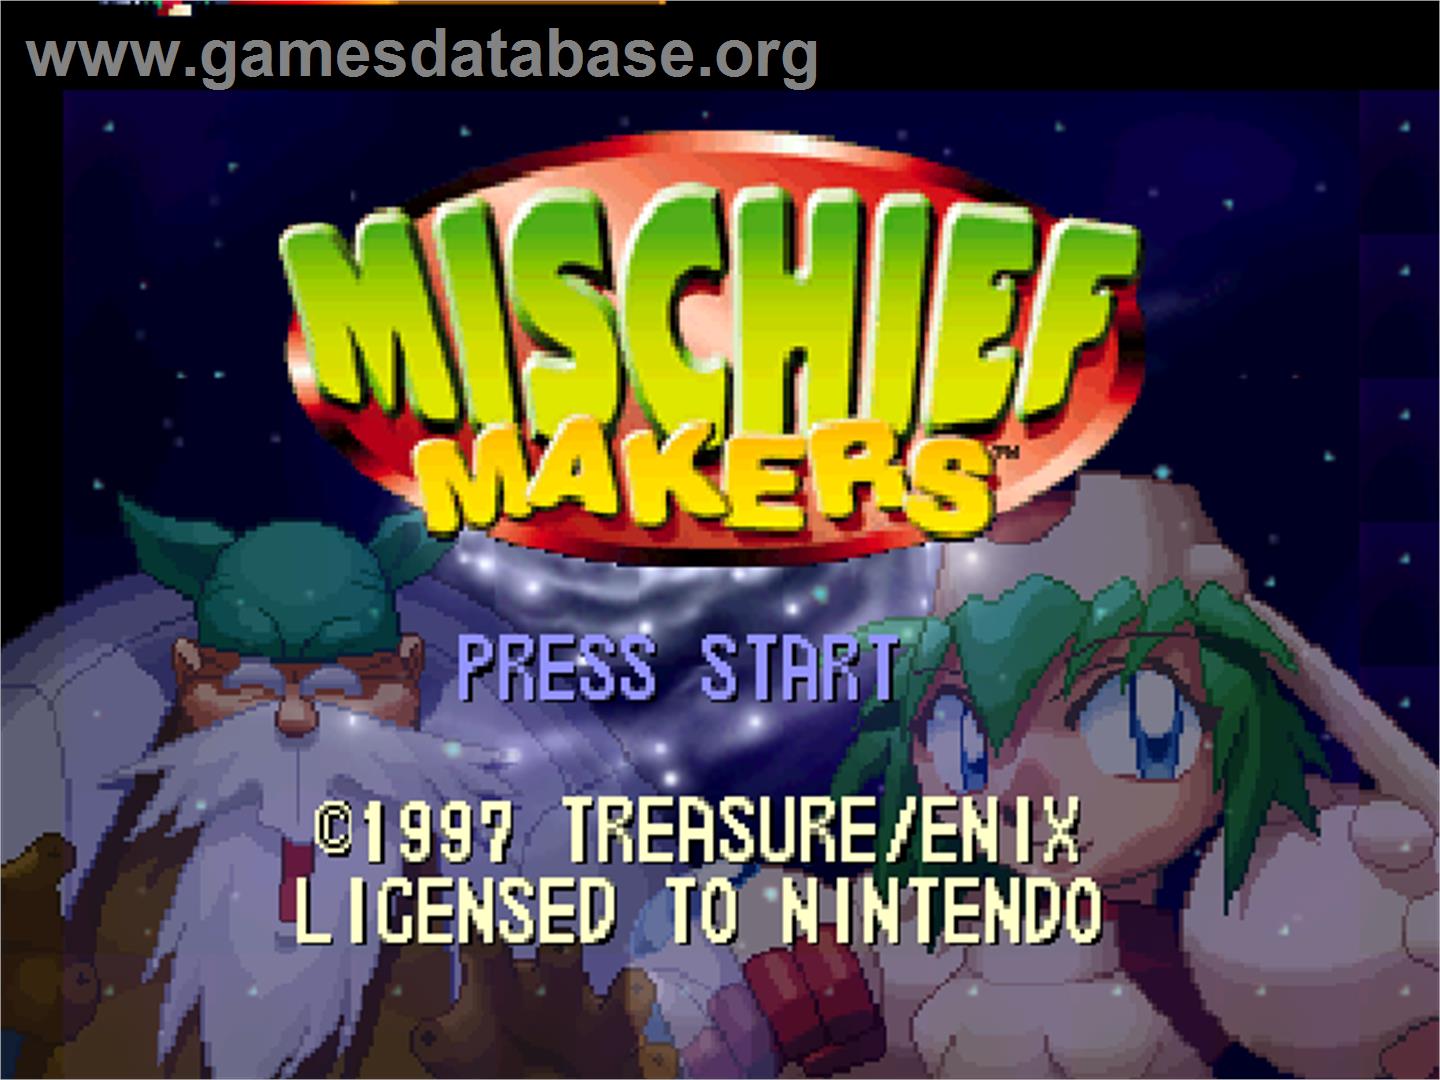 Mischief Makers - Nintendo N64 - Artwork - Title Screen